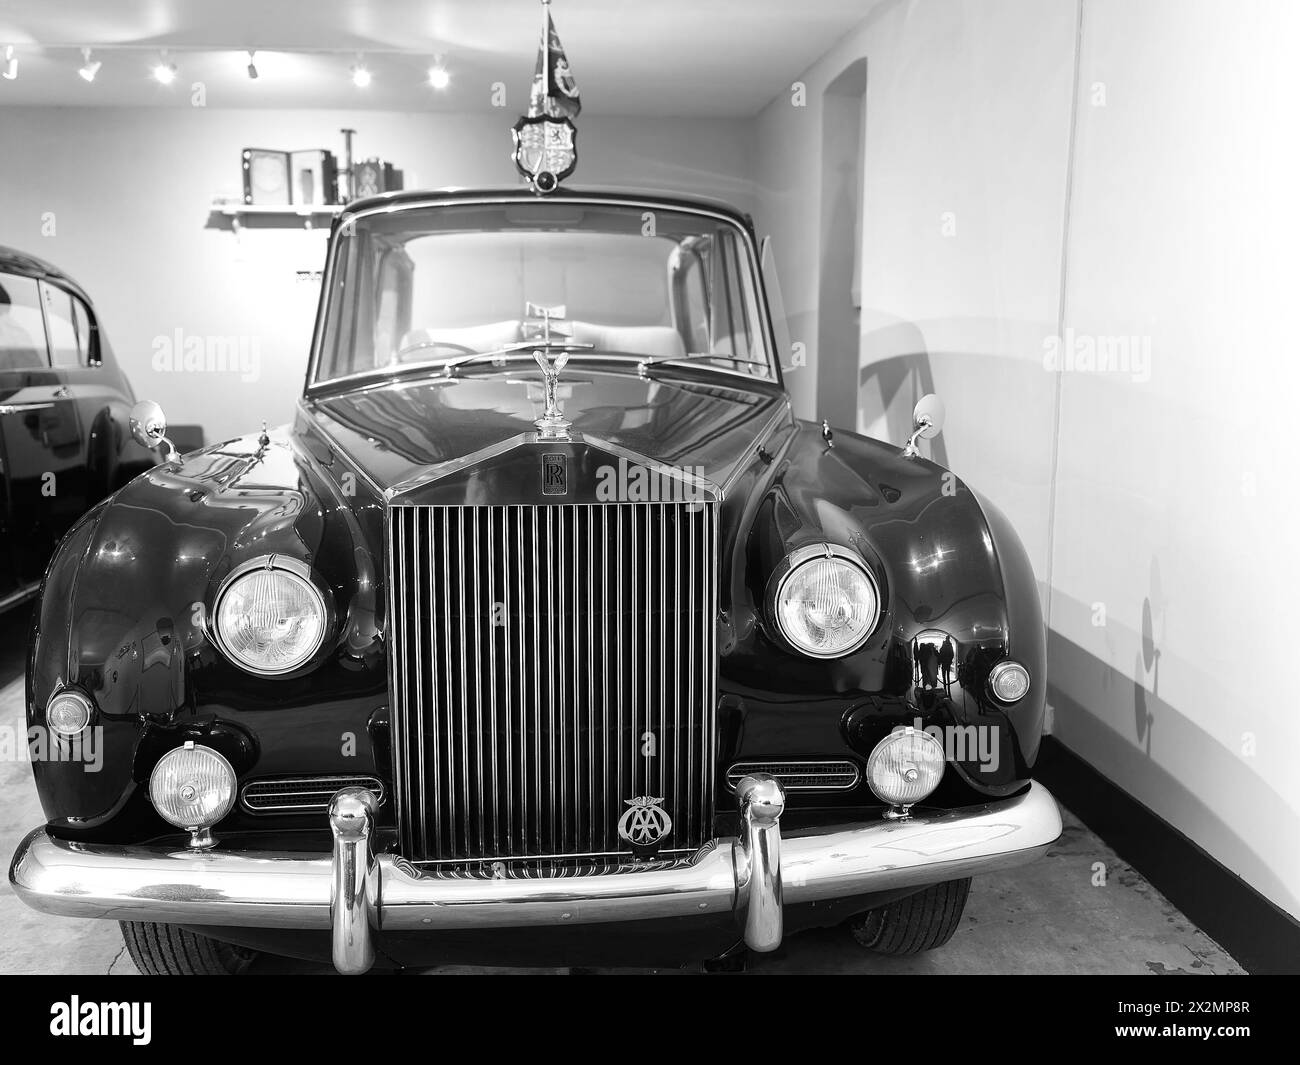 Rolls Royce Phantom car, utilisé par la reine Elizabeth II de 1961 à 2002, dans un garage de la résidence de campagne du monarque britannique, Sandringham House. Banque D'Images